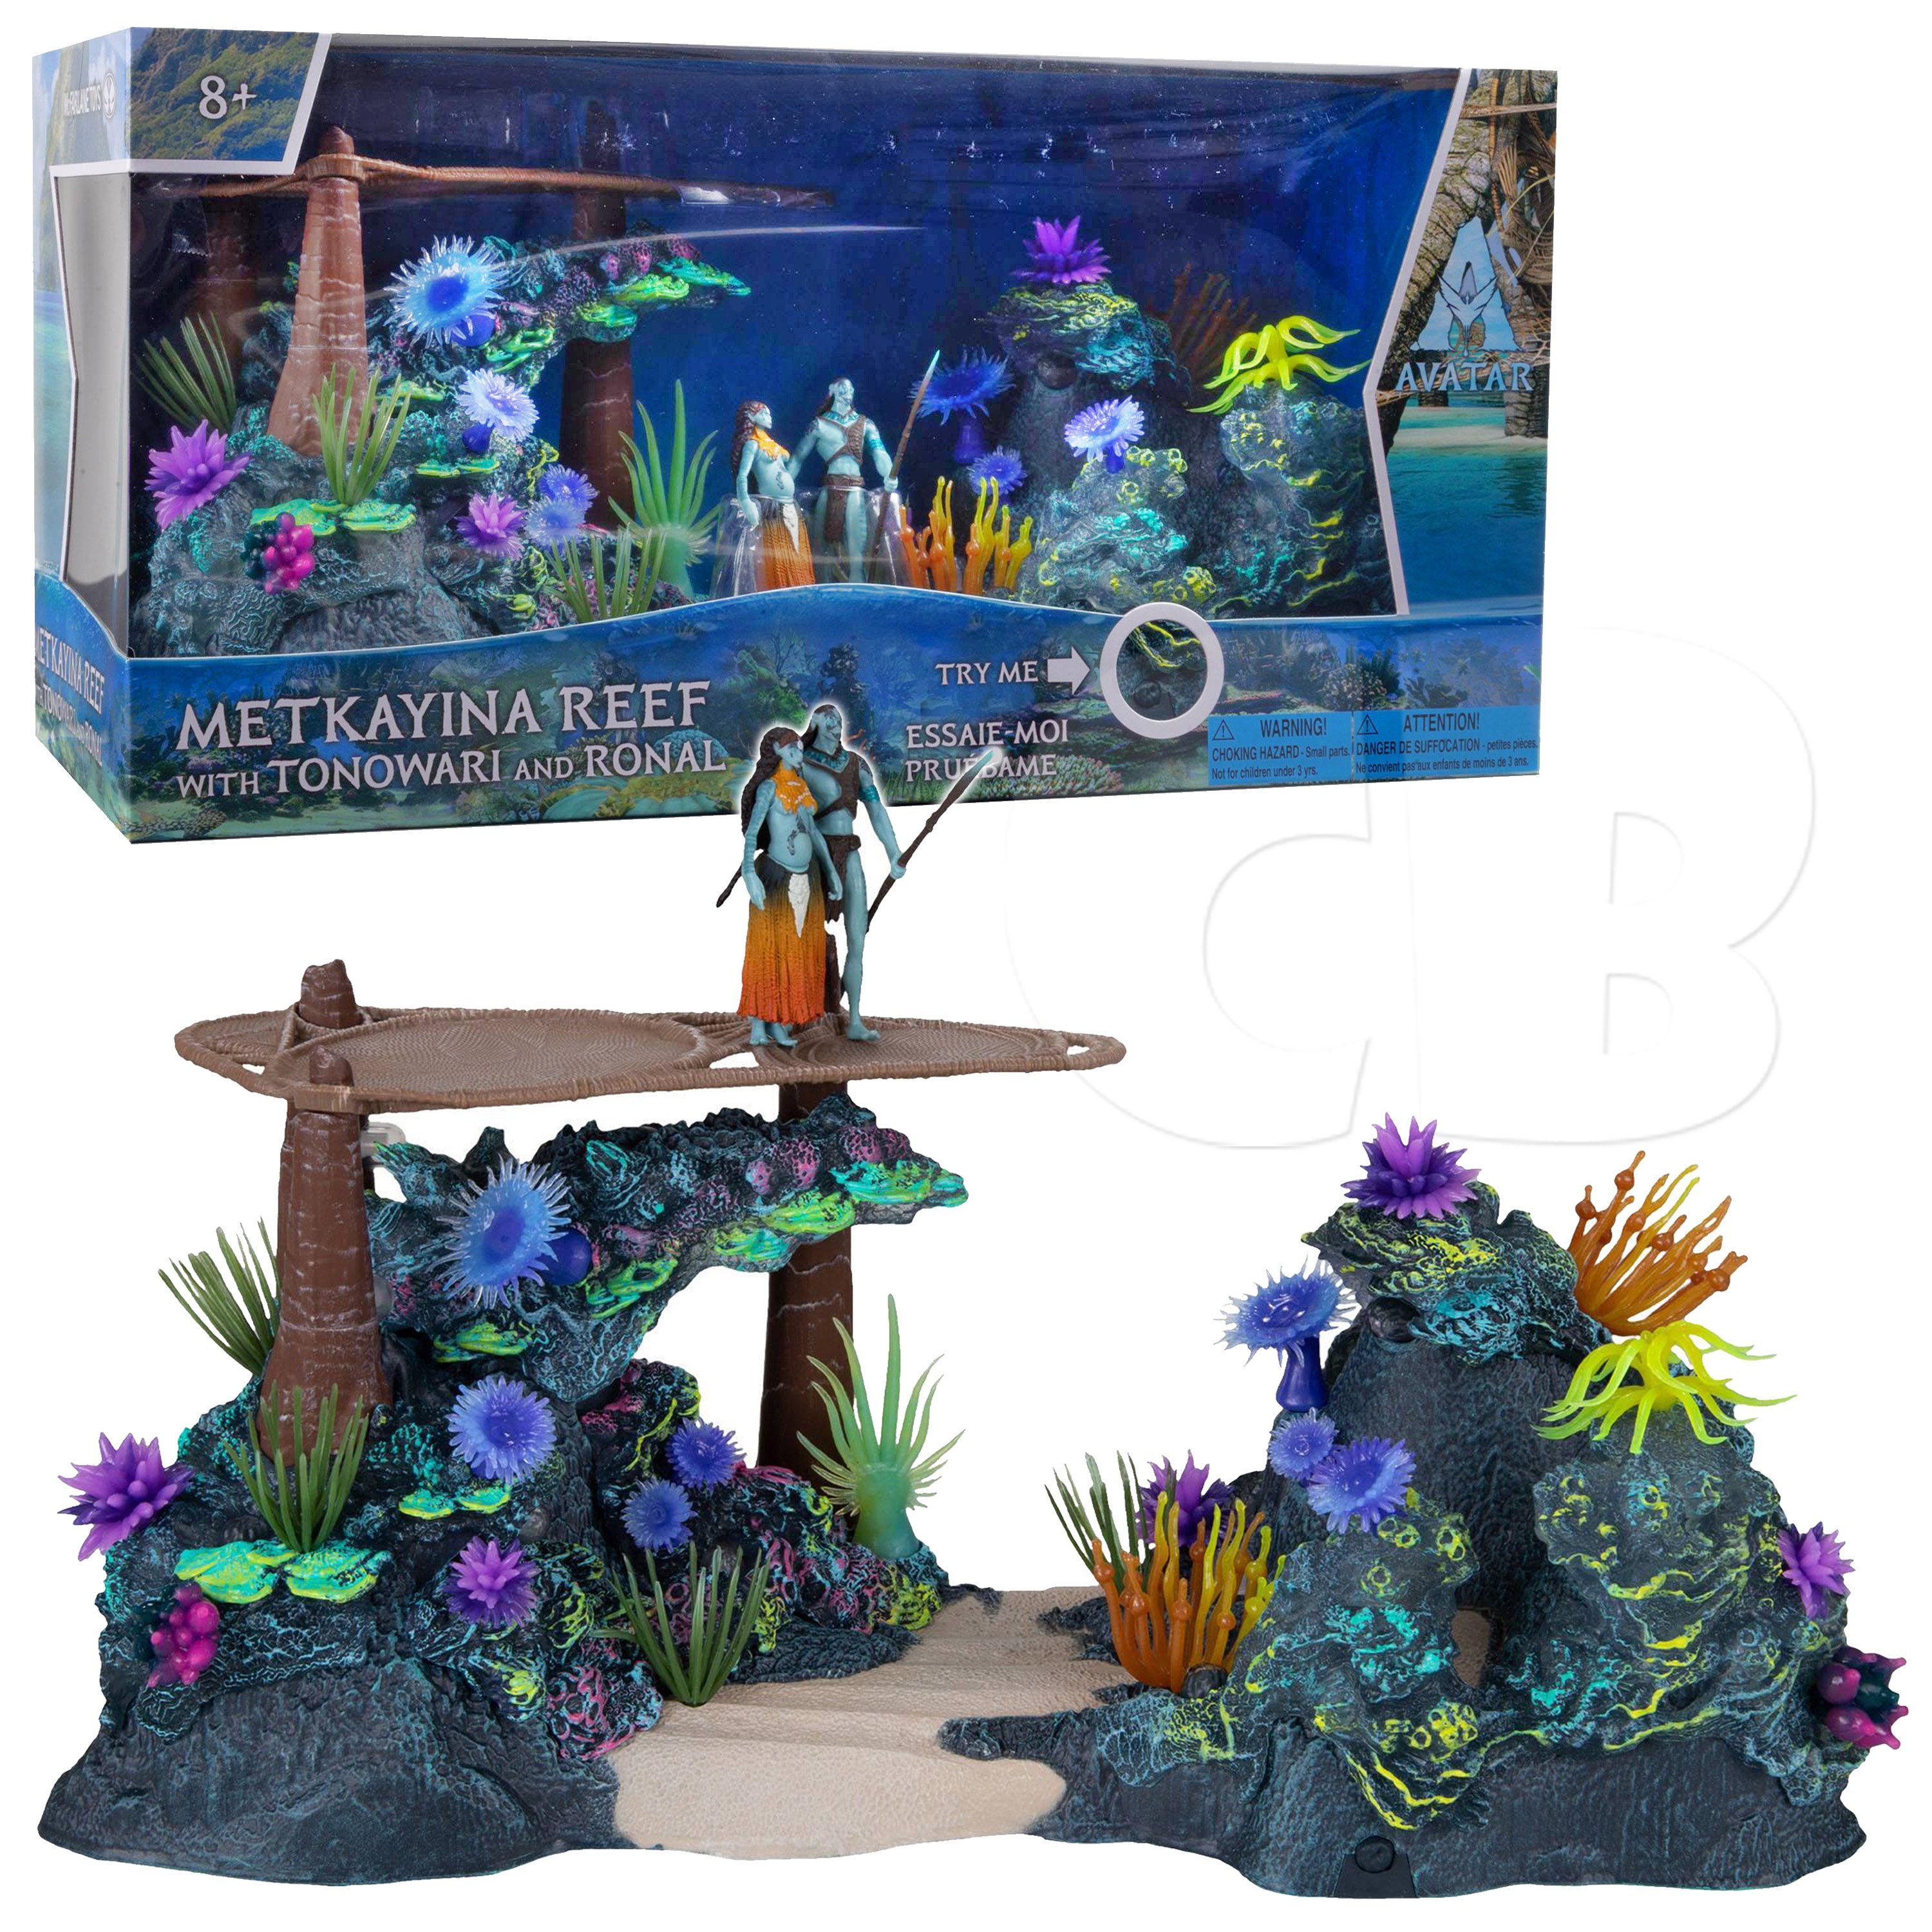 McFarlane Toys Actionfigur Avatar: The Way of Water, (Playset, mit 6 cm Ronal und Tonowari Figur und weiterem Zubehör), Metkayina Reef with Tonowari and Ronal